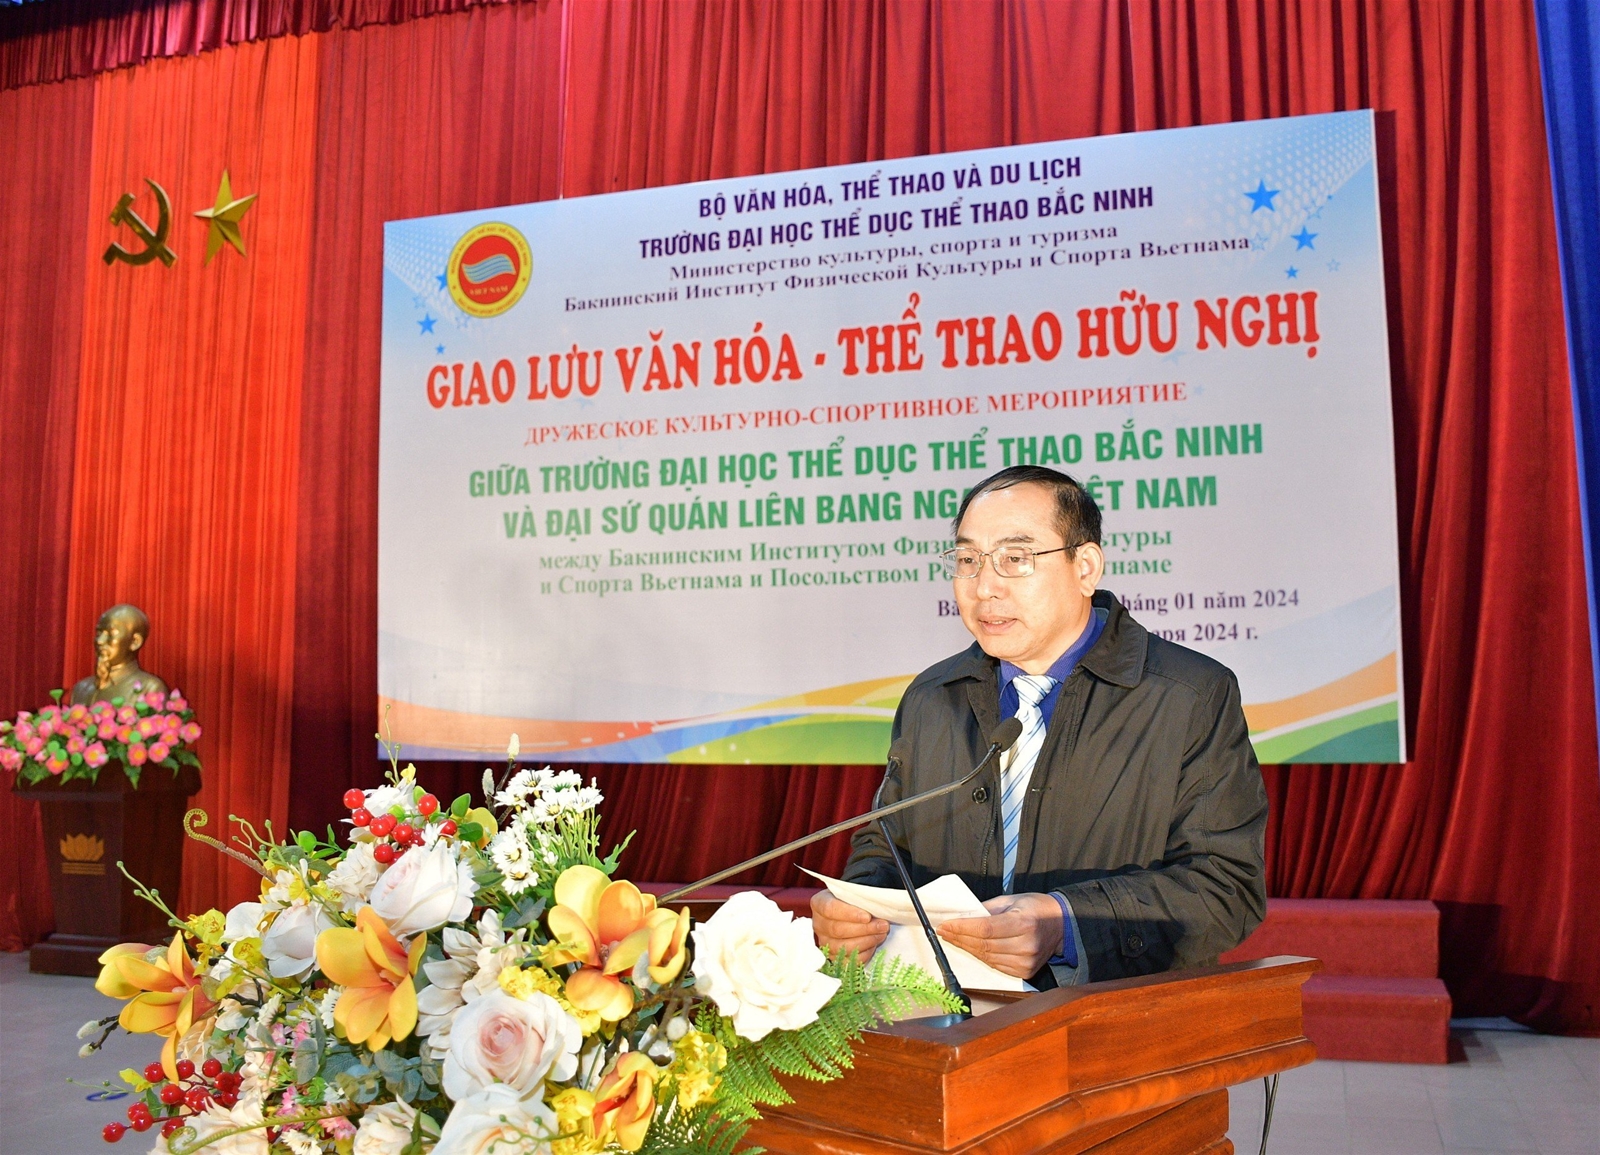 Giao lưu Văn hóa - Thể thao hữu nghị giữa Trường Đại học TDTT Bắc Ninh và Đại sứ quán Liên bang Nga tại Việt Nam